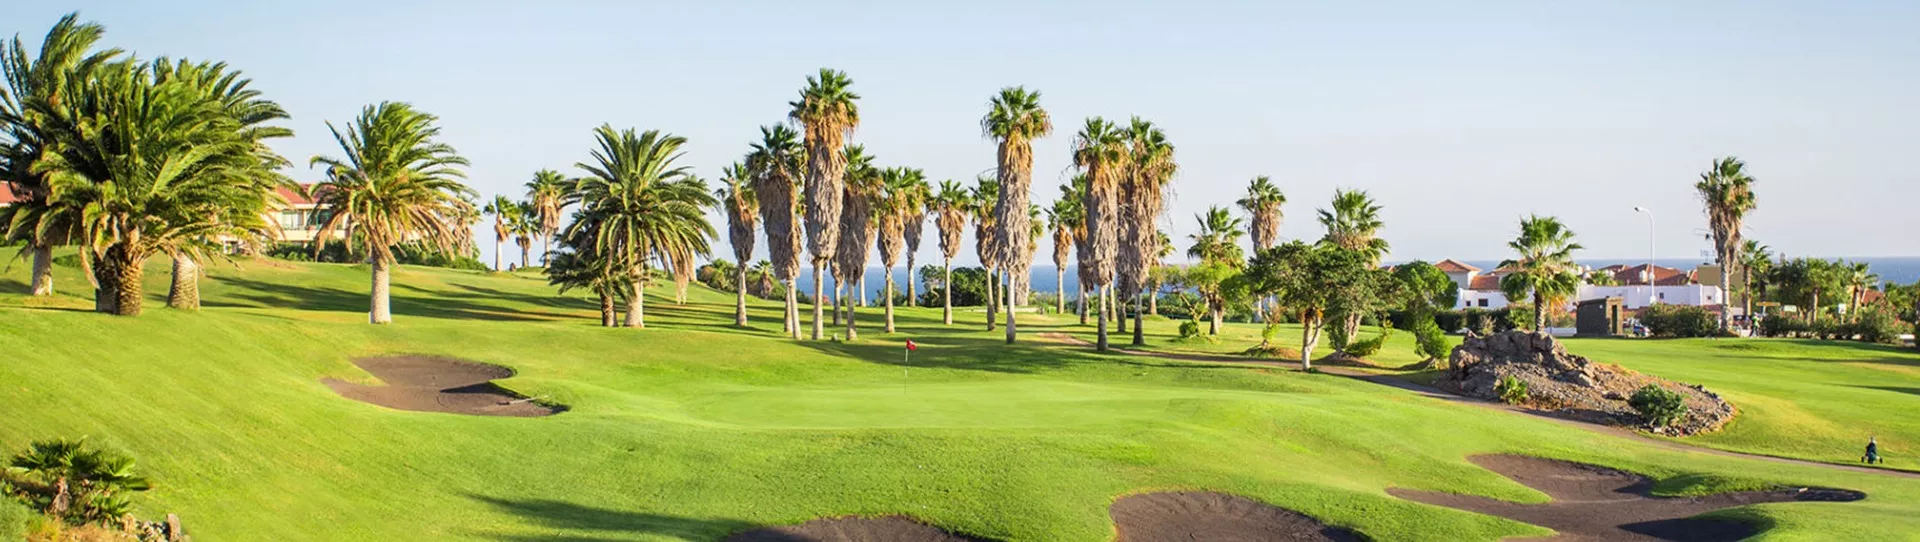 Spain golf courses - Golf del Sur - Photo 1